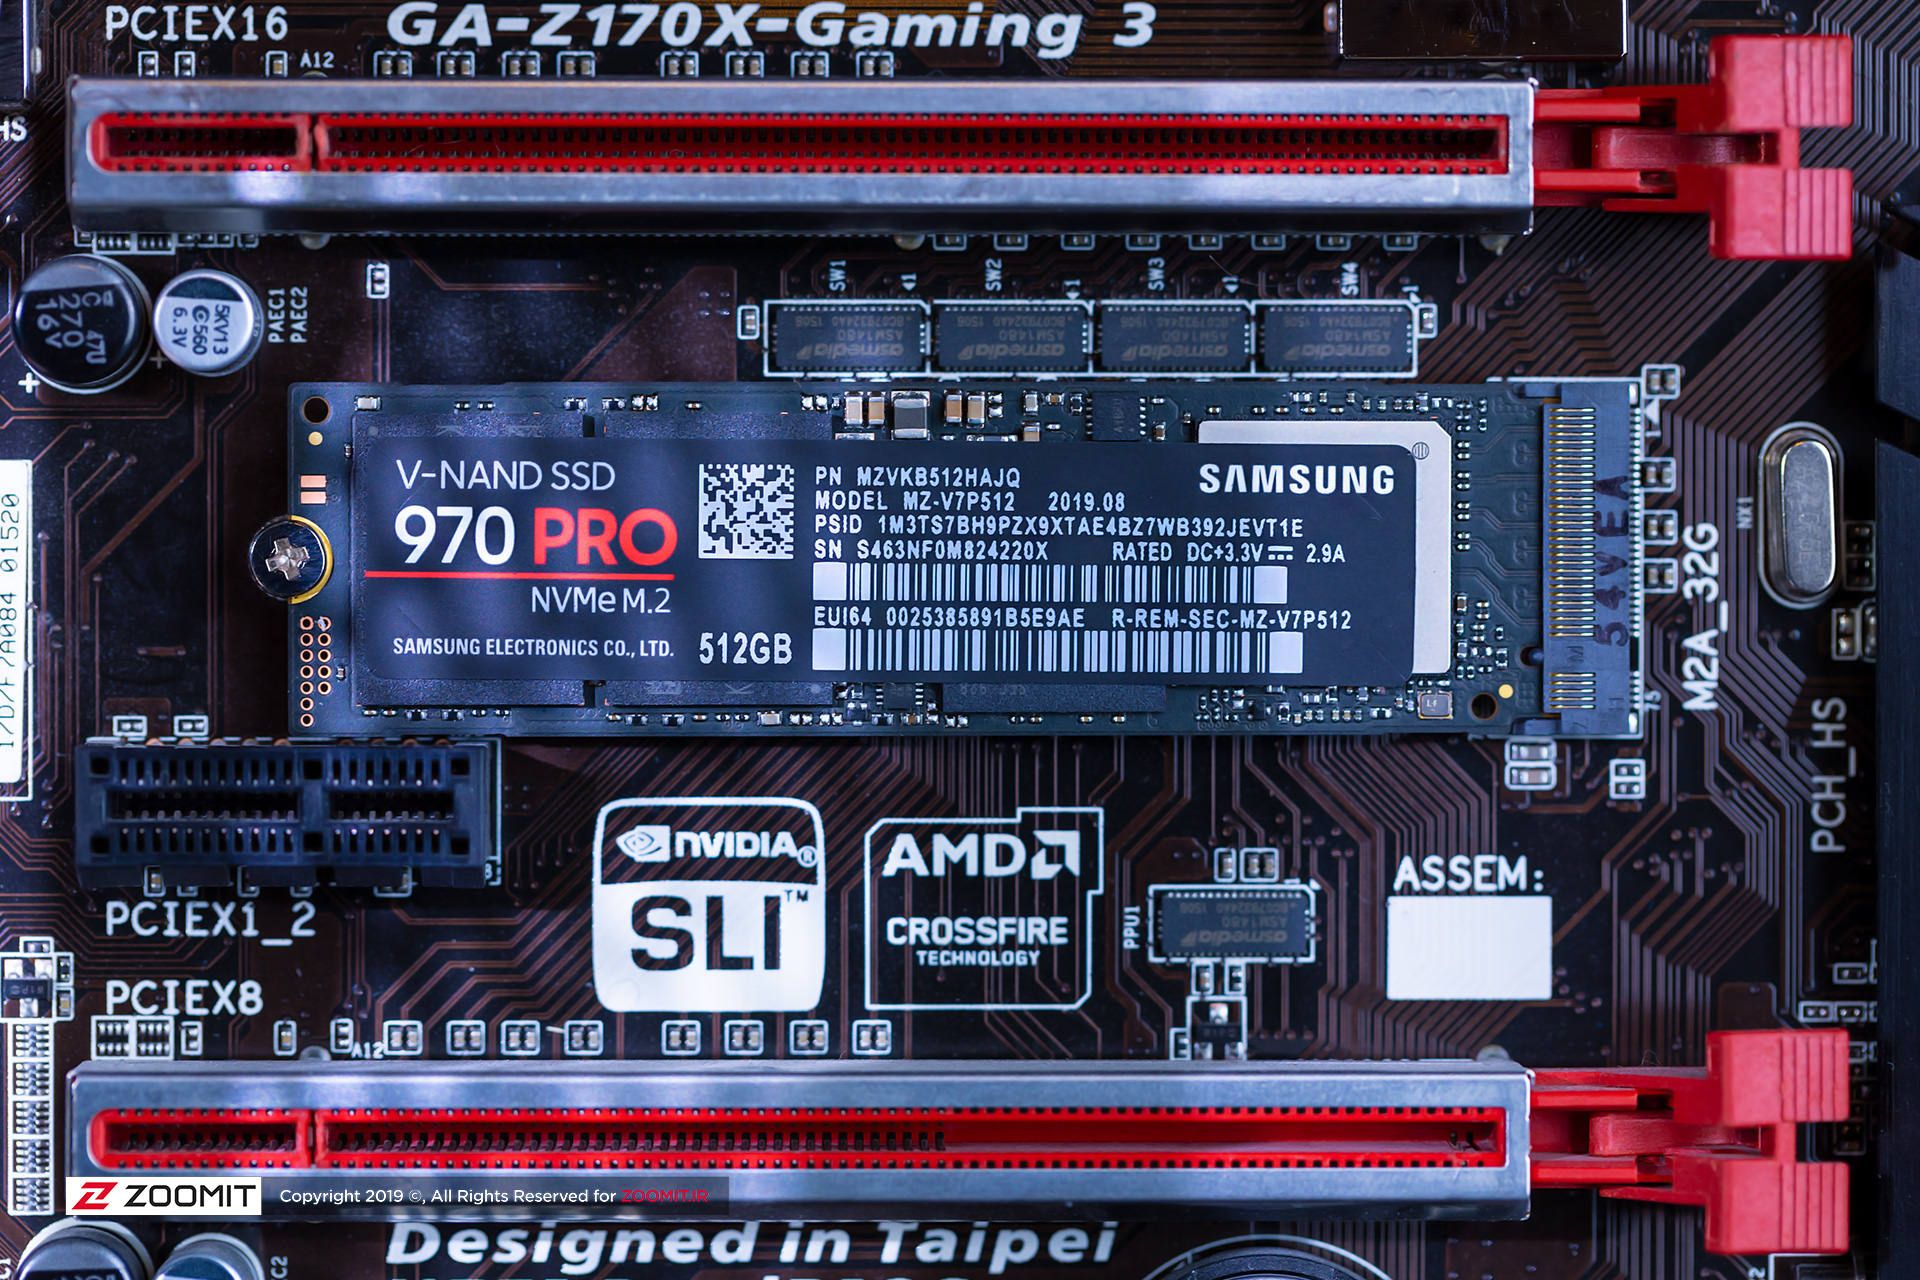 مرجع متخصصين ايران Samsung 970 Pro / سامسونگ ۹۷۰ پرو